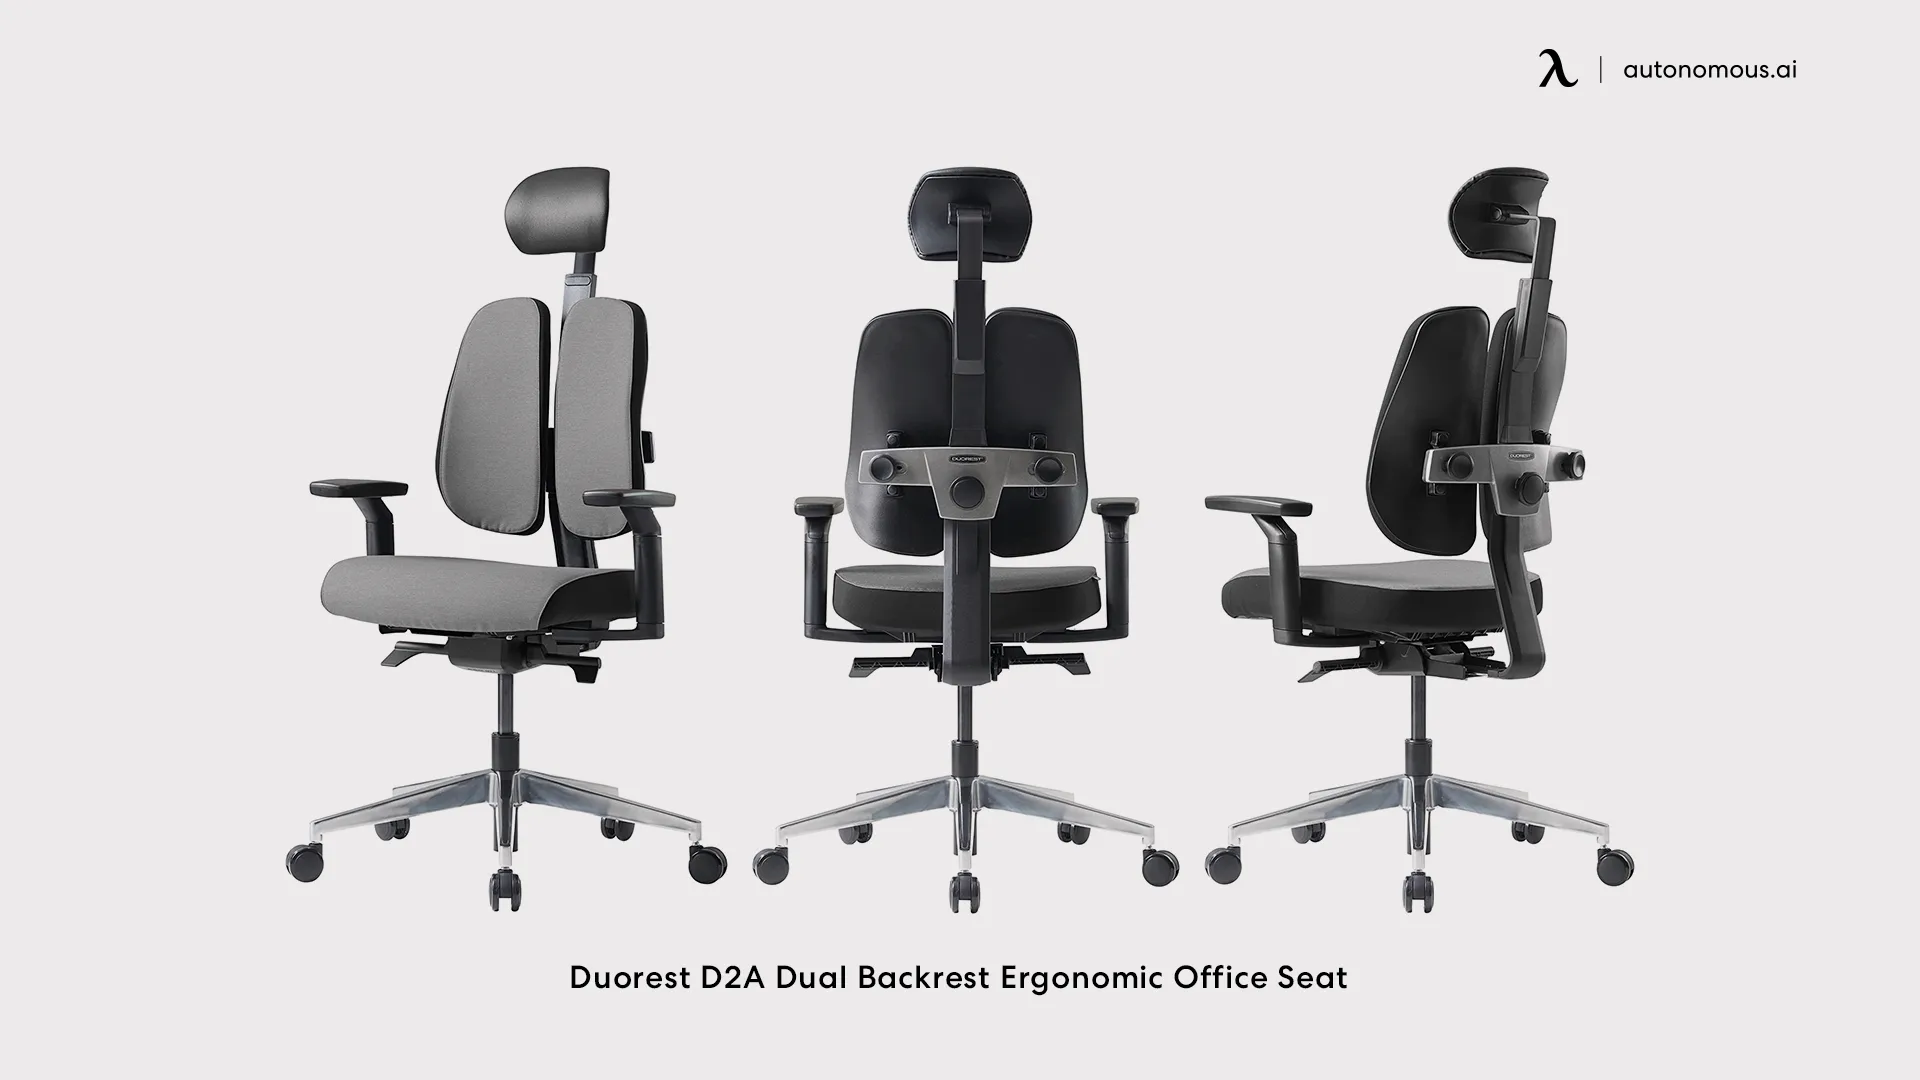 Duorest D2A Dual Backrest Ergonomic Office Seat